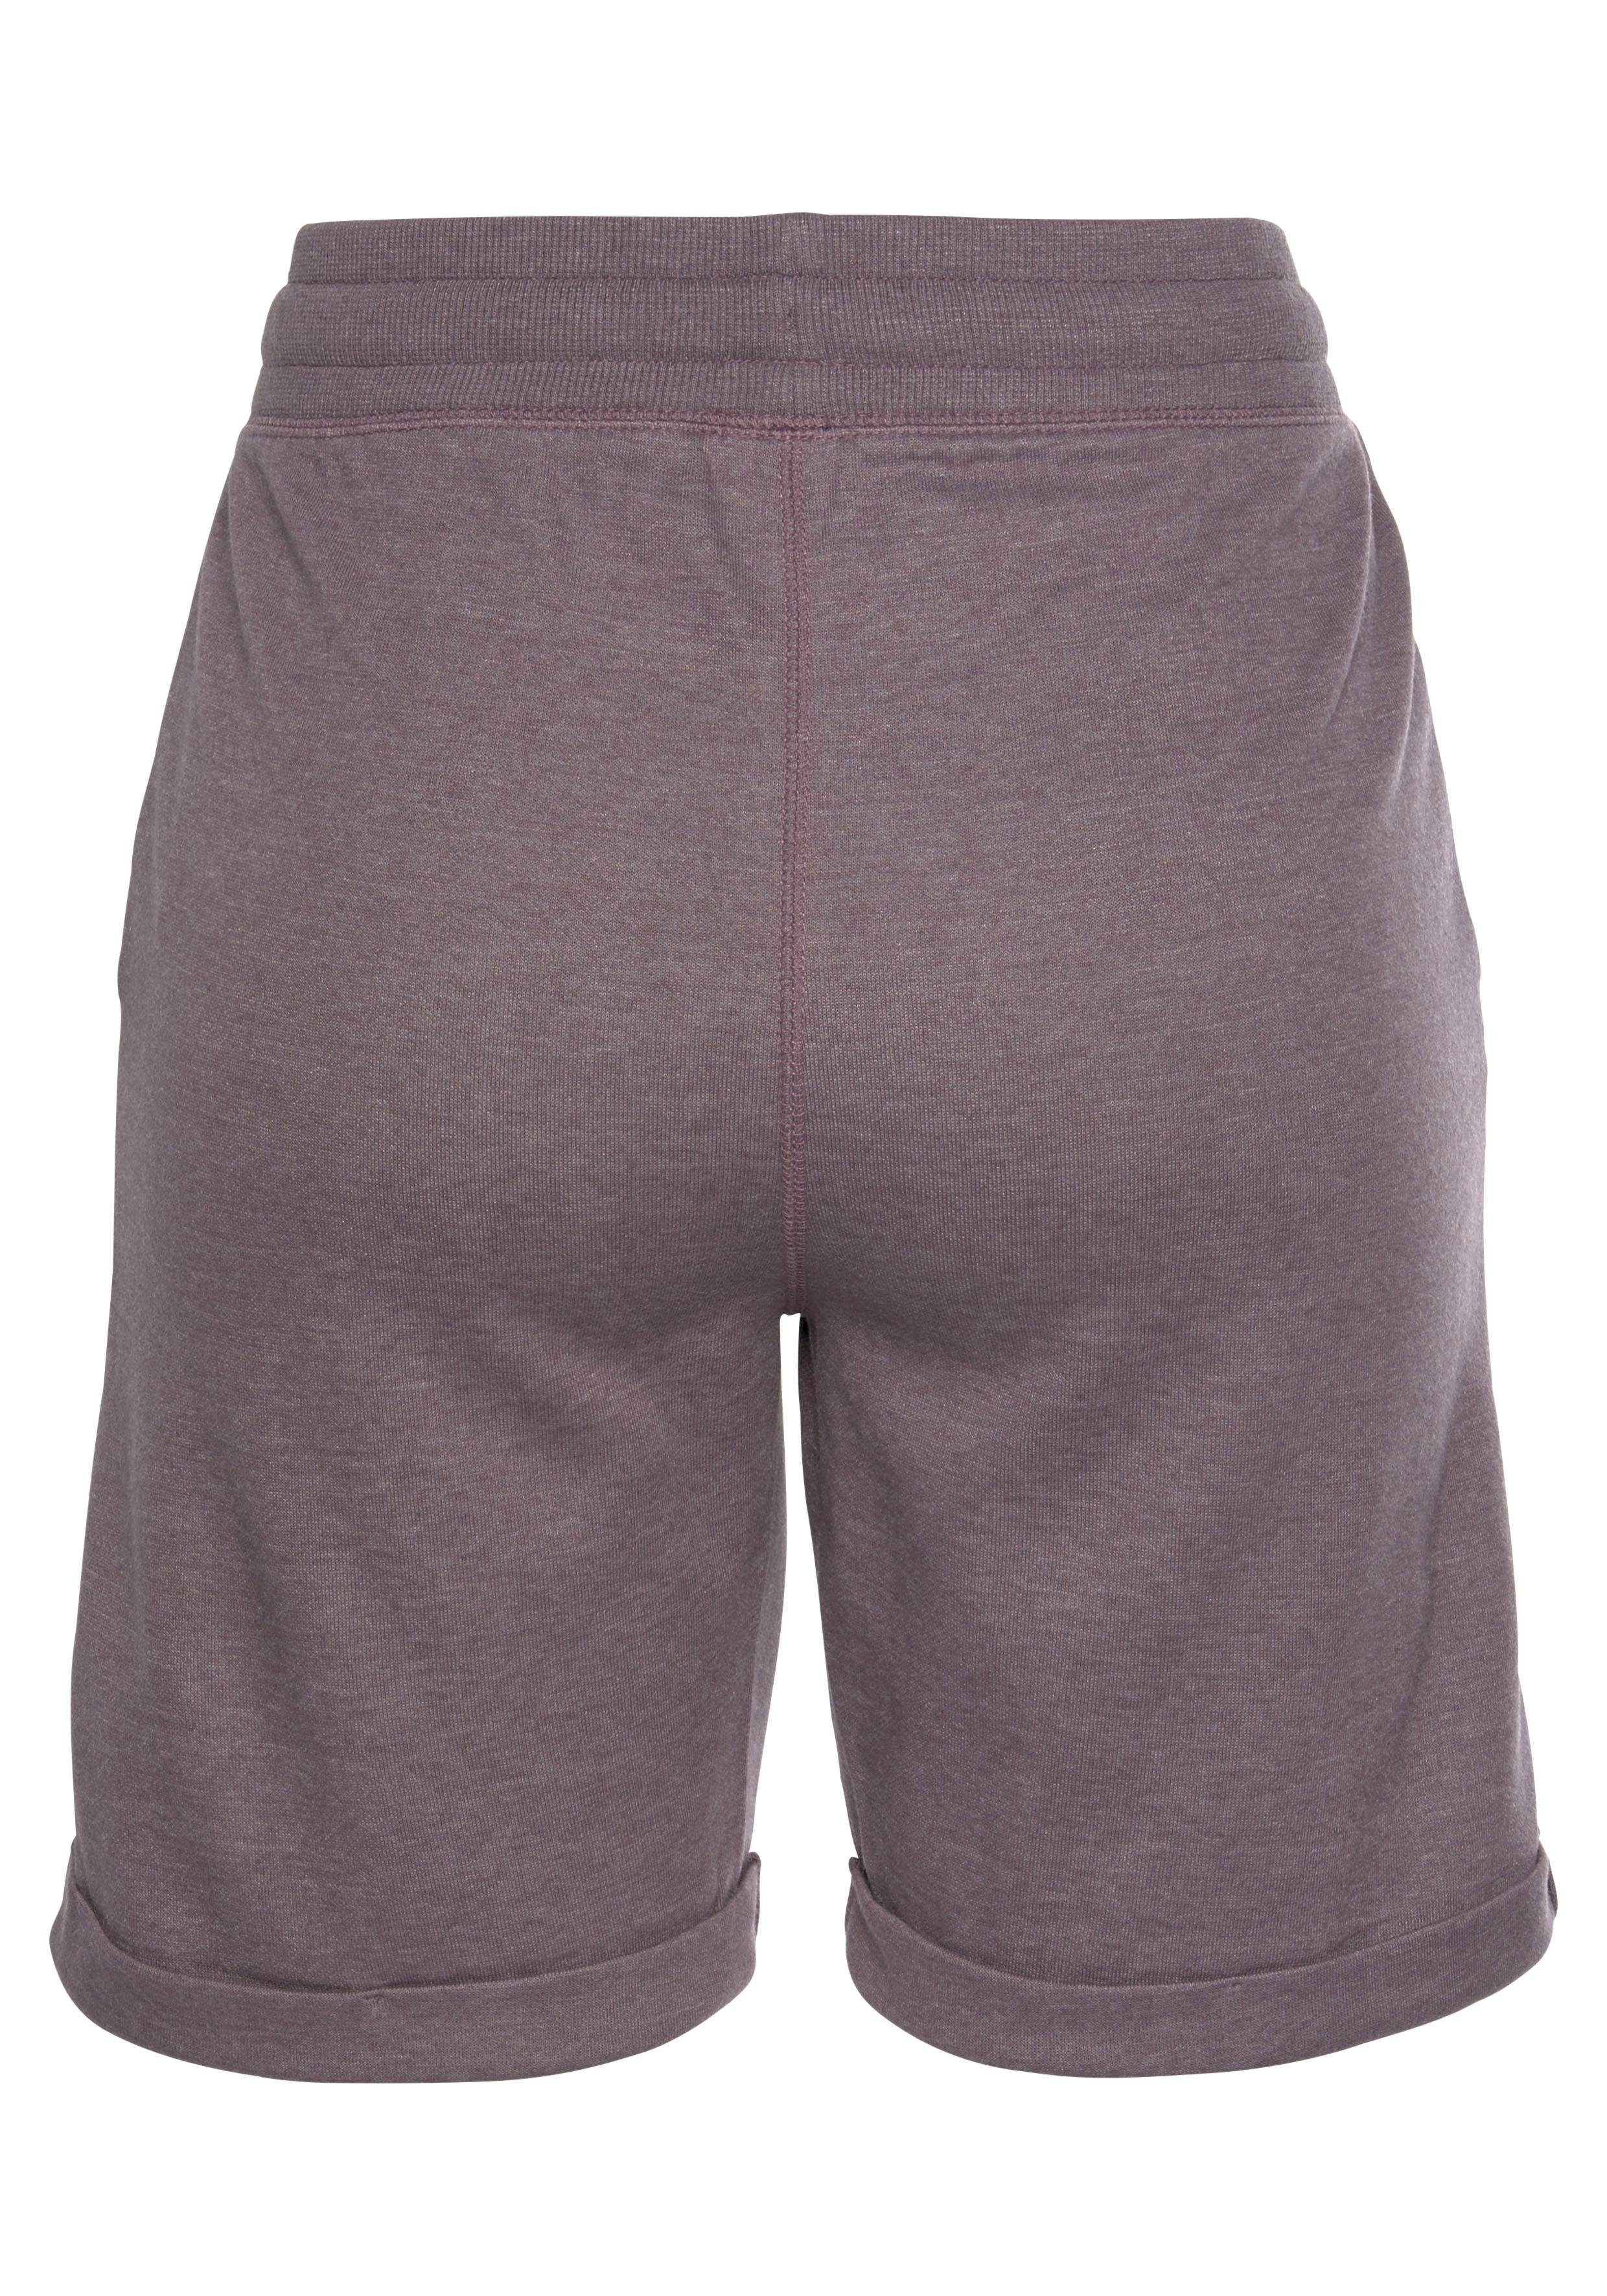 mauve-meliert und seitlichen mit aufgeschlagenen -kurze Sweathose Beinsäumen Loungewear Bench. Taschen Bermudas